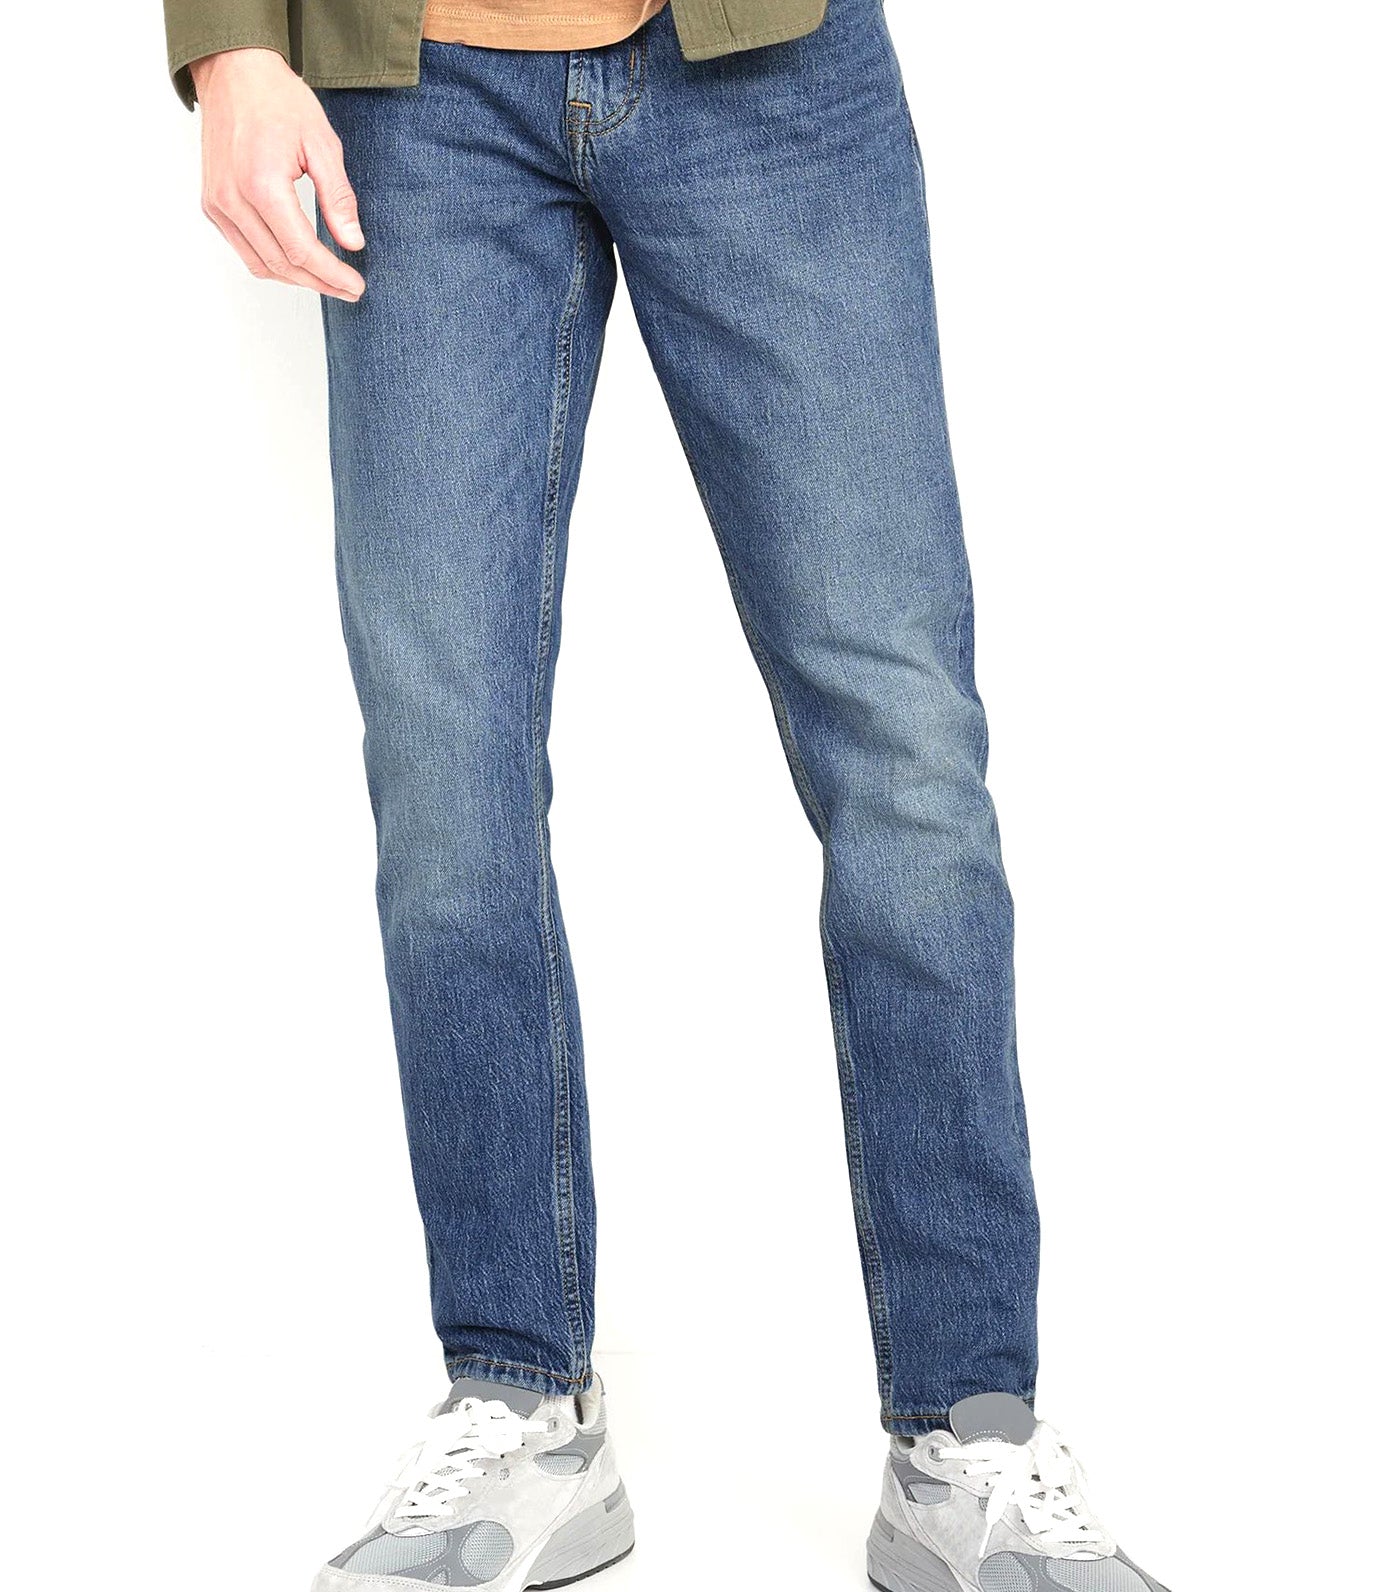 Relaxed Slim Taper Built-In Flex Jeans for Men Medium